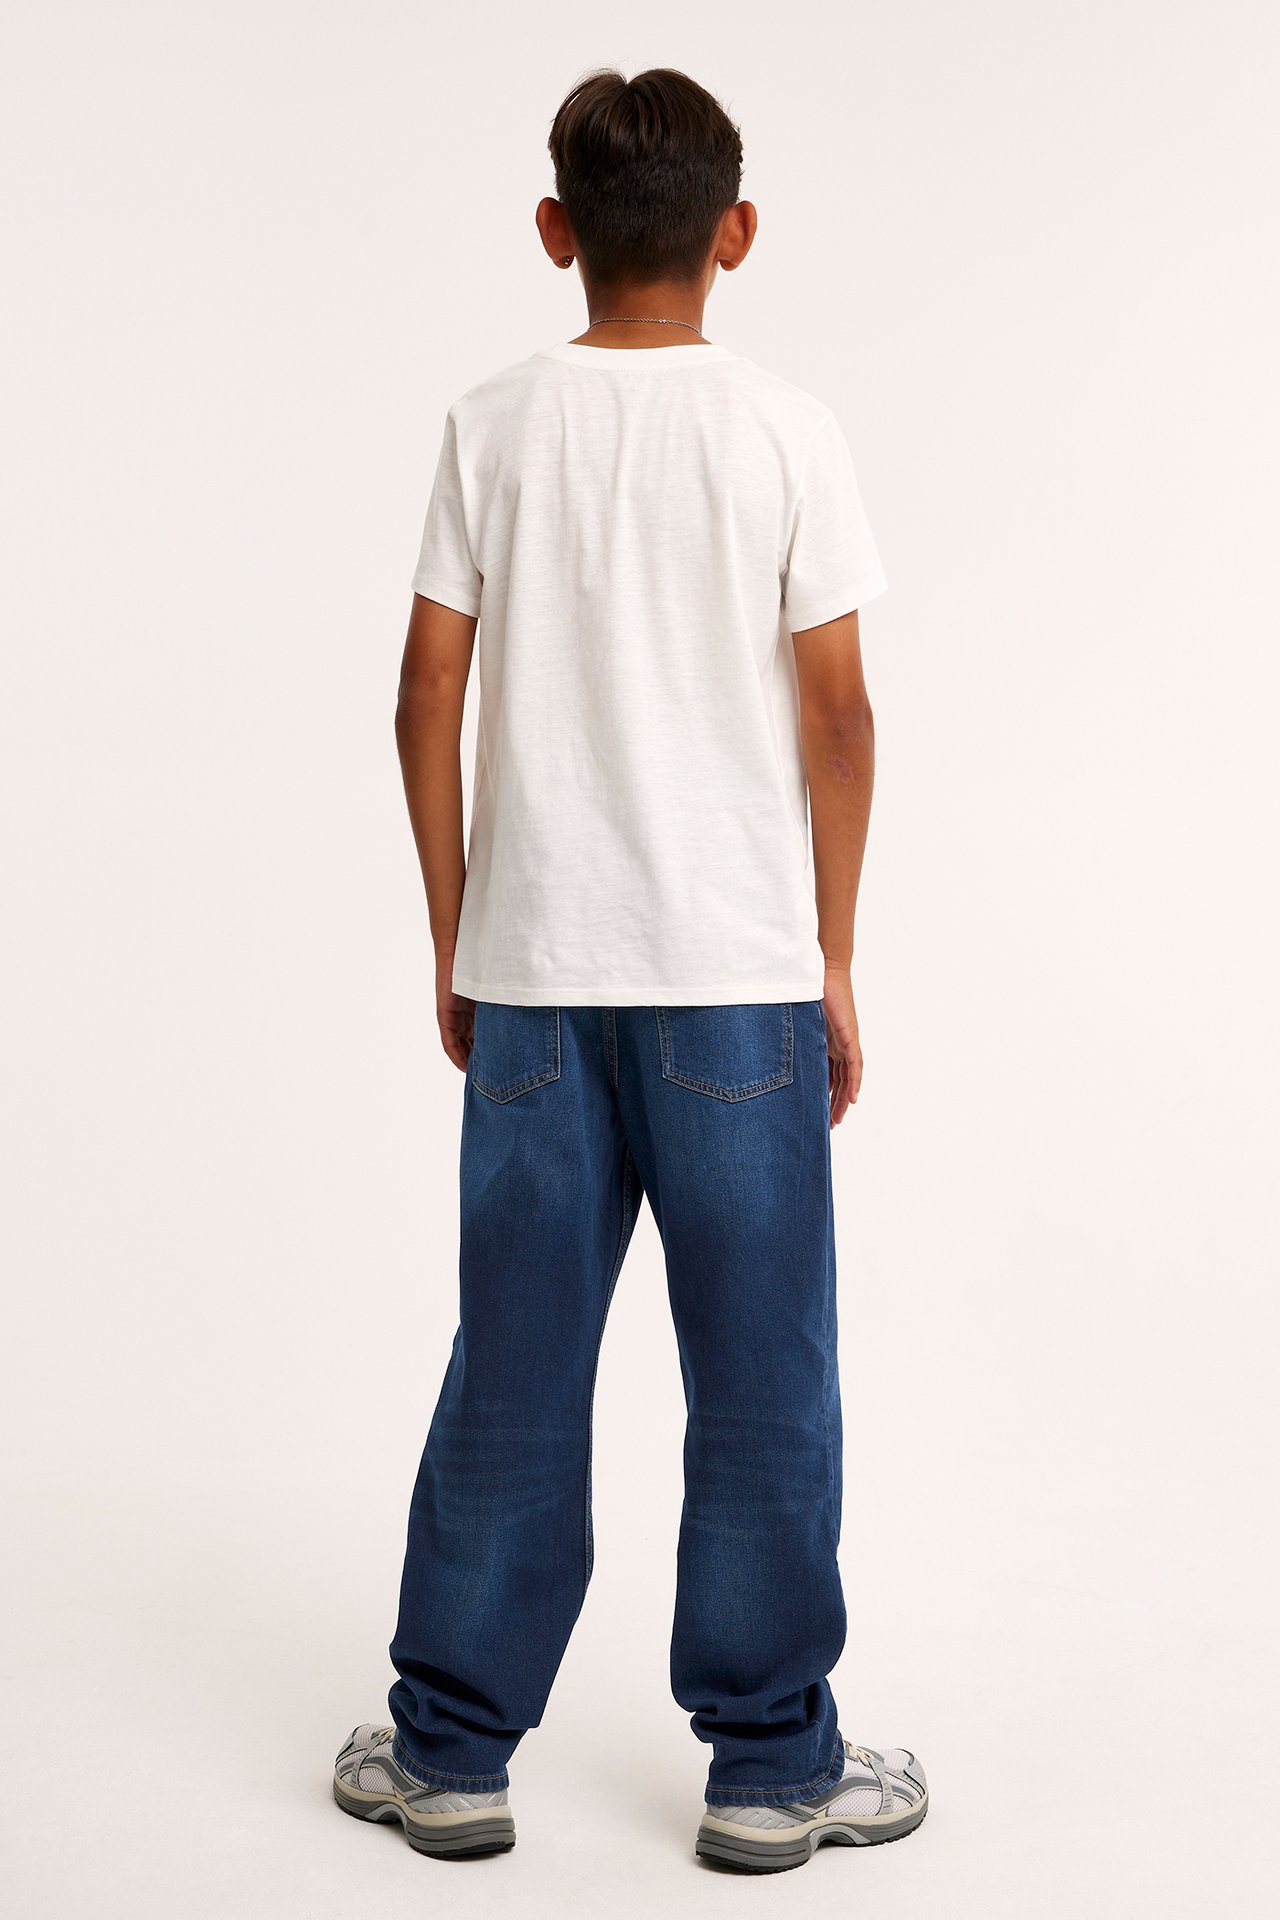 Loose jeans mid waist - Tumma denimi - 4